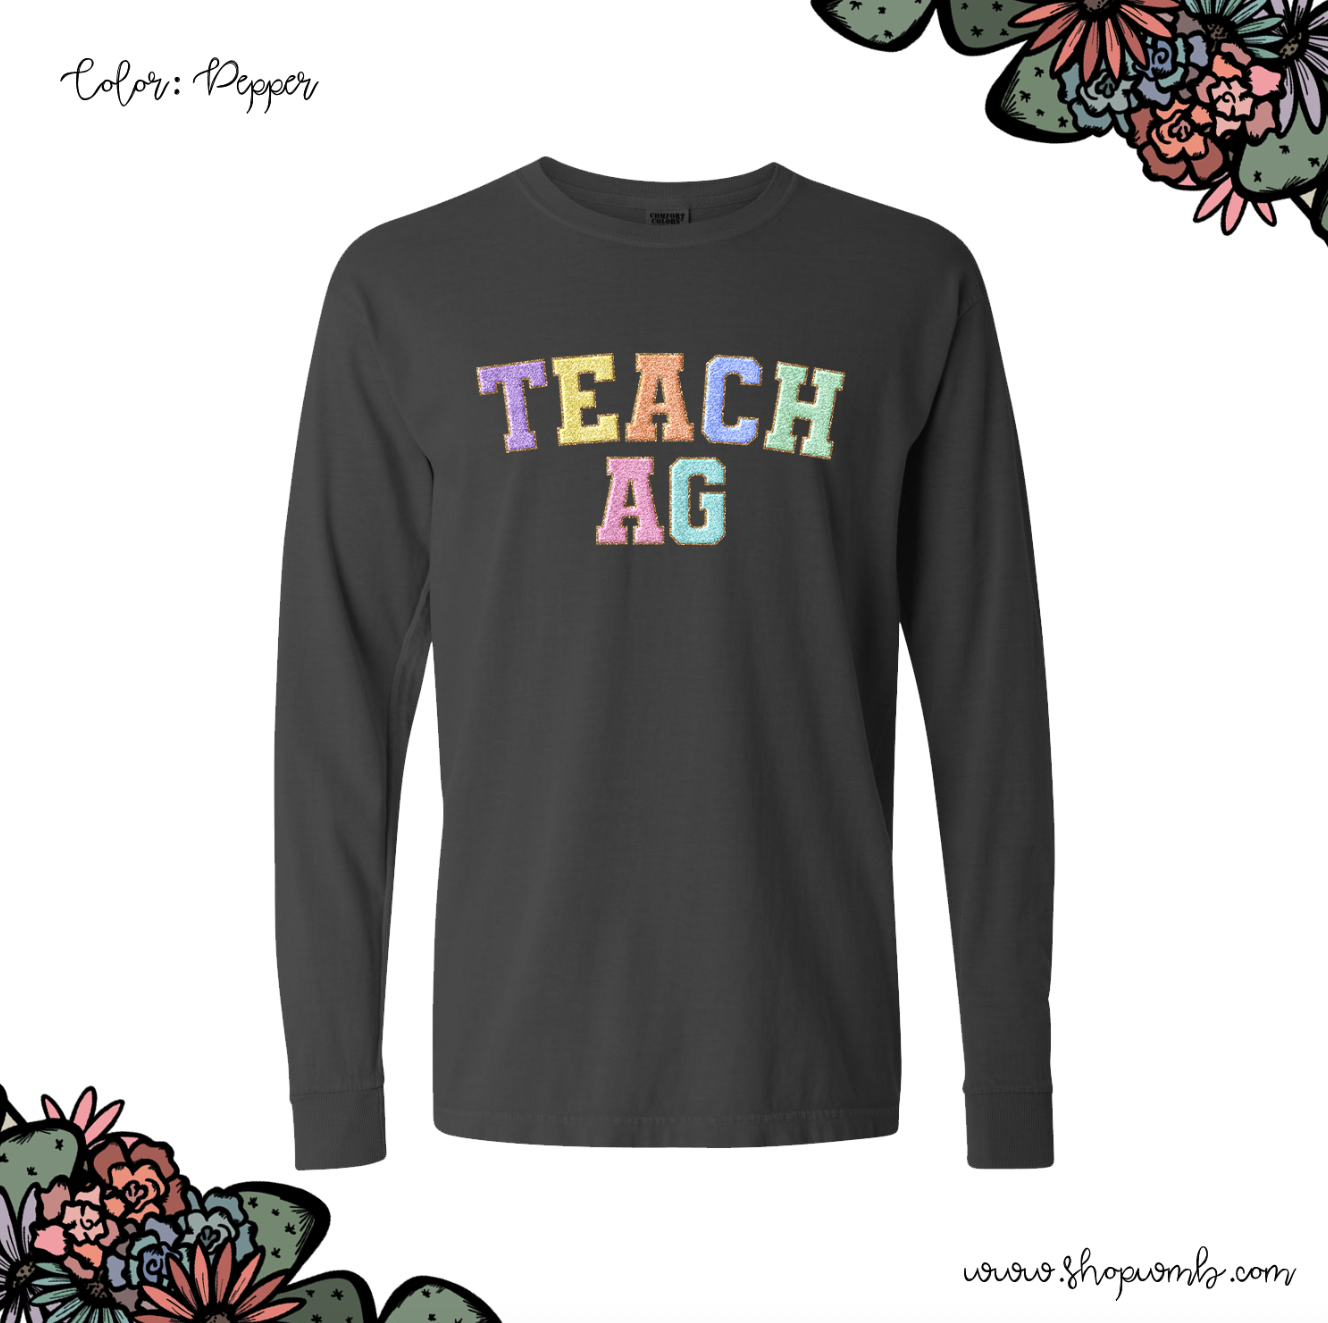 Faux Chenille Teach AG LONG SLEEVE T-Shirt (S-3XL) - Multiple Colors!